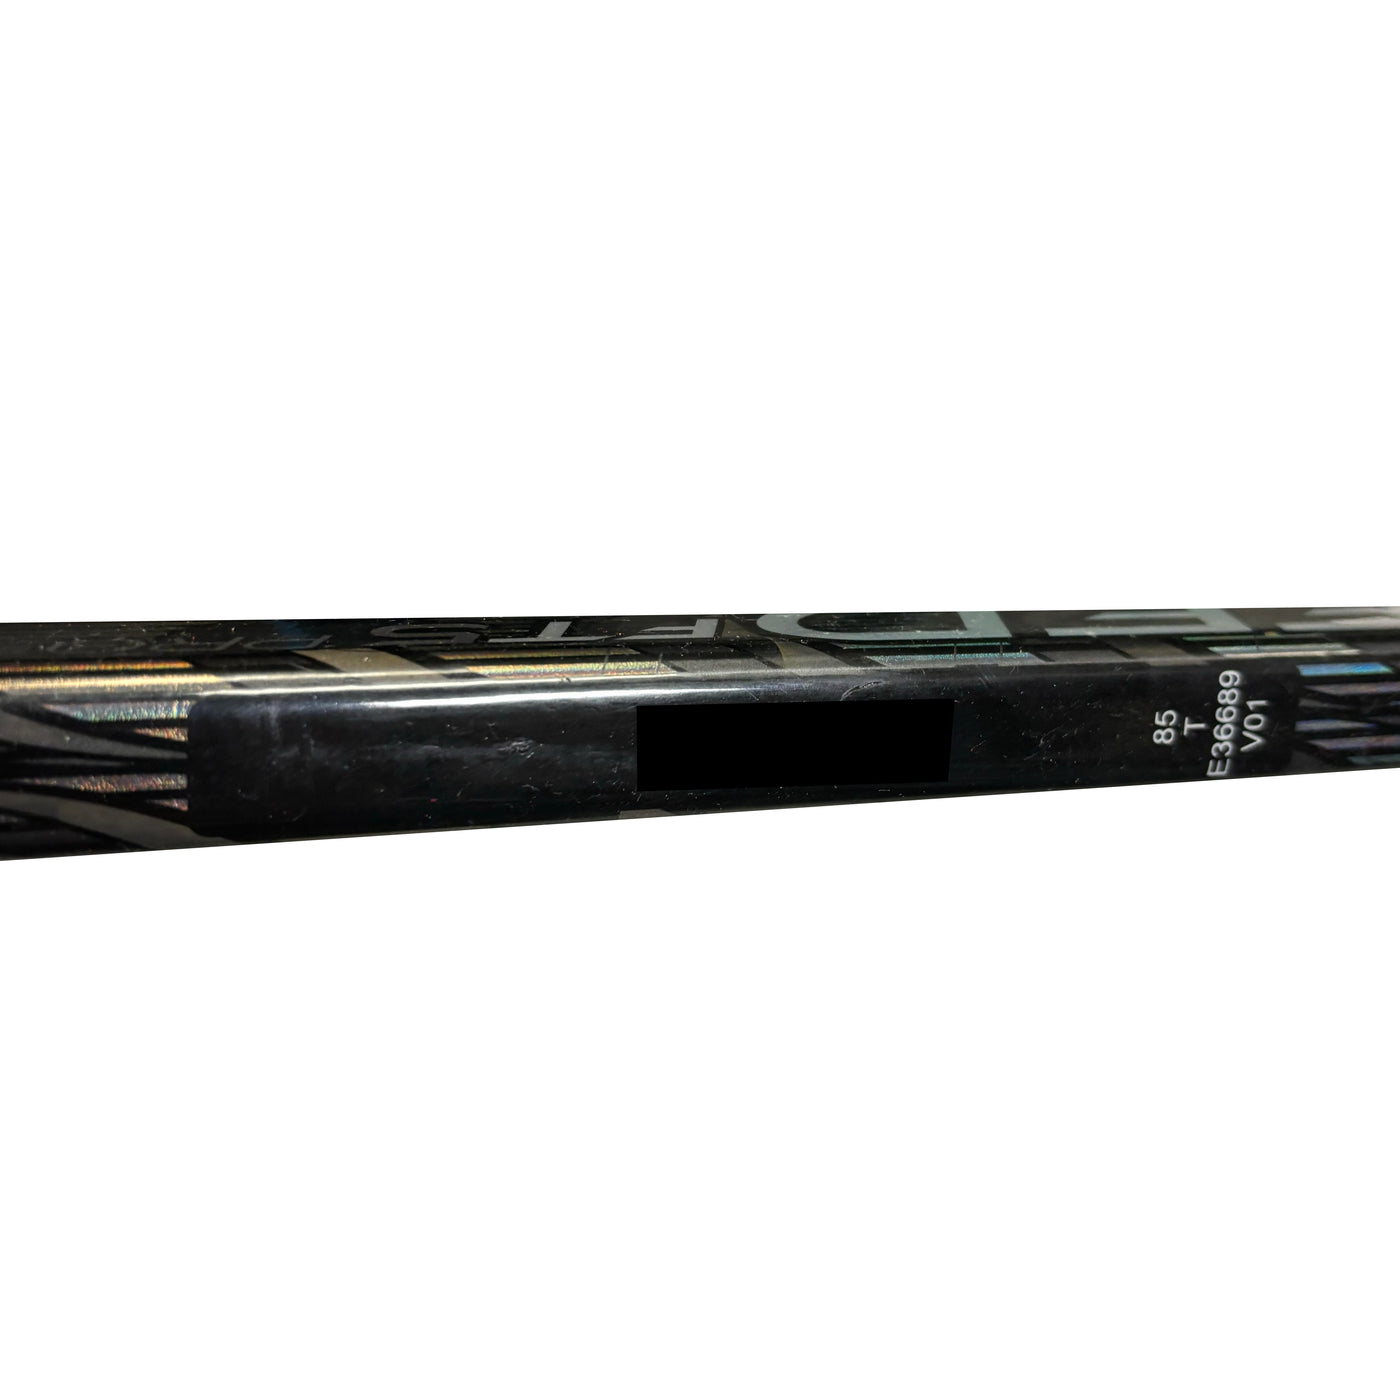 CCM Jetspeed FT5 Pro - Pro Stock Hockey Stick - TB - USED